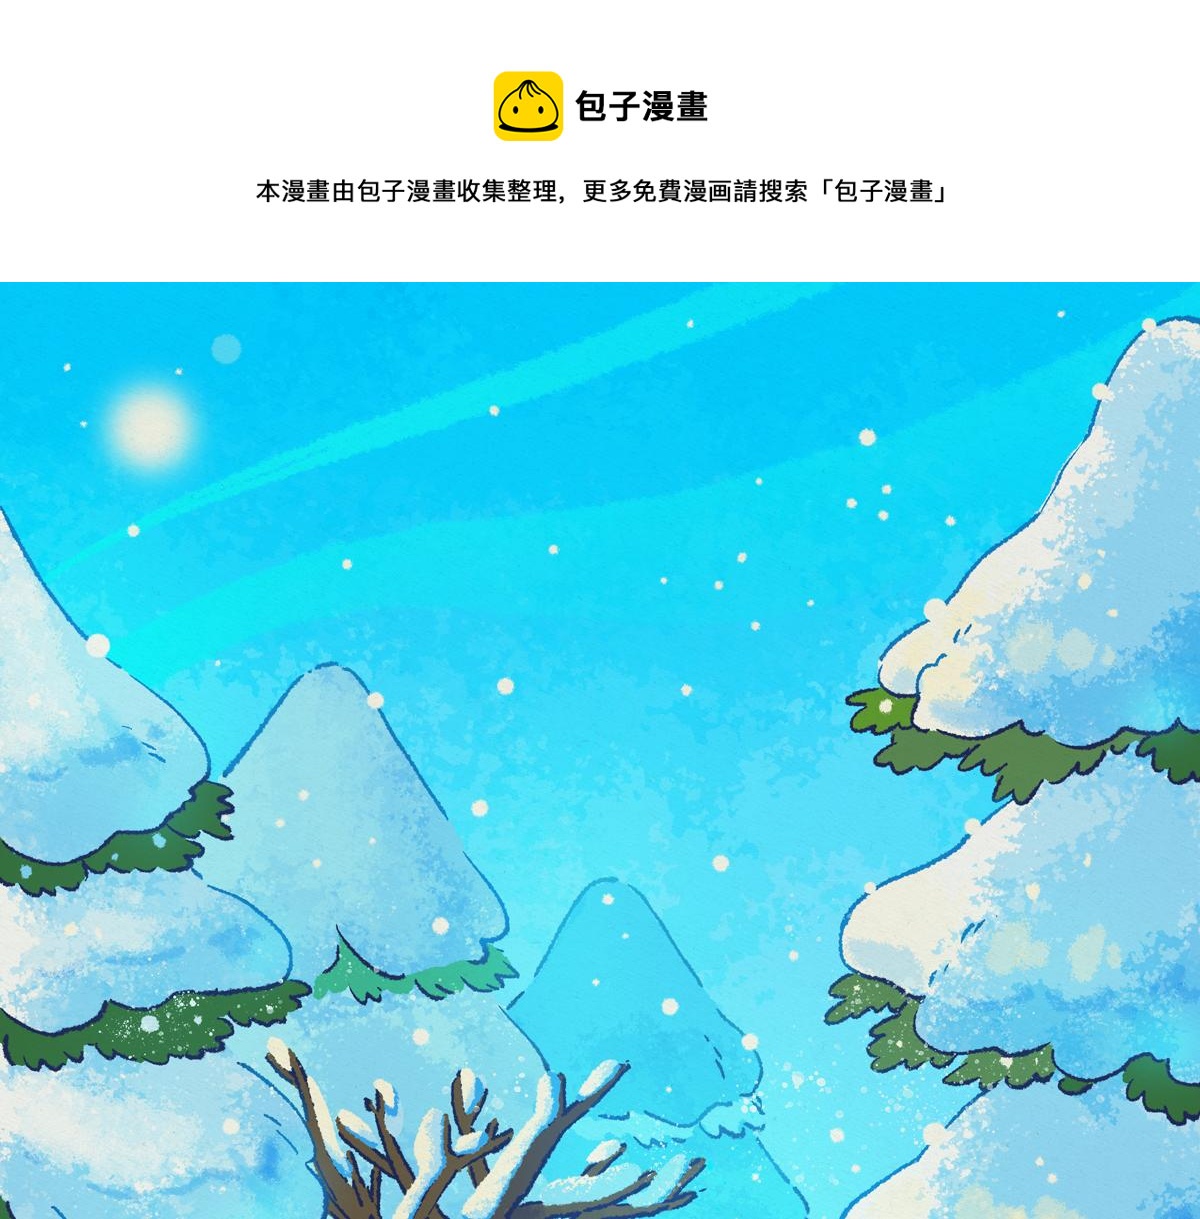 拉夢的故事 - 冬雪 - 1